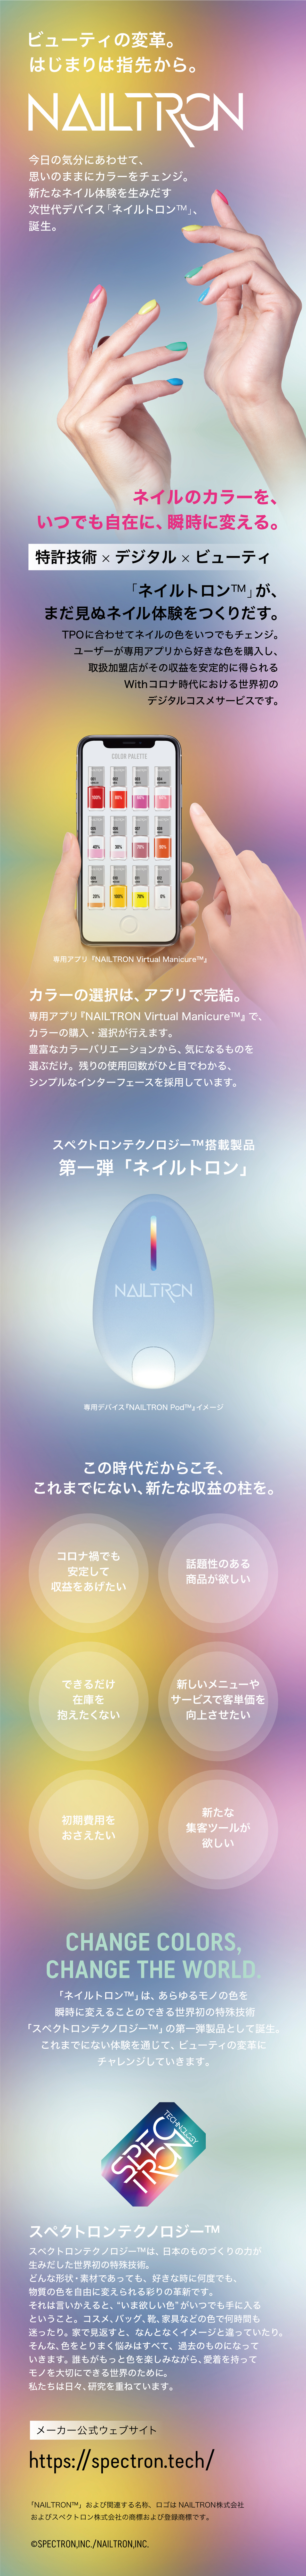 NAILTRON (ネイルトロン) 